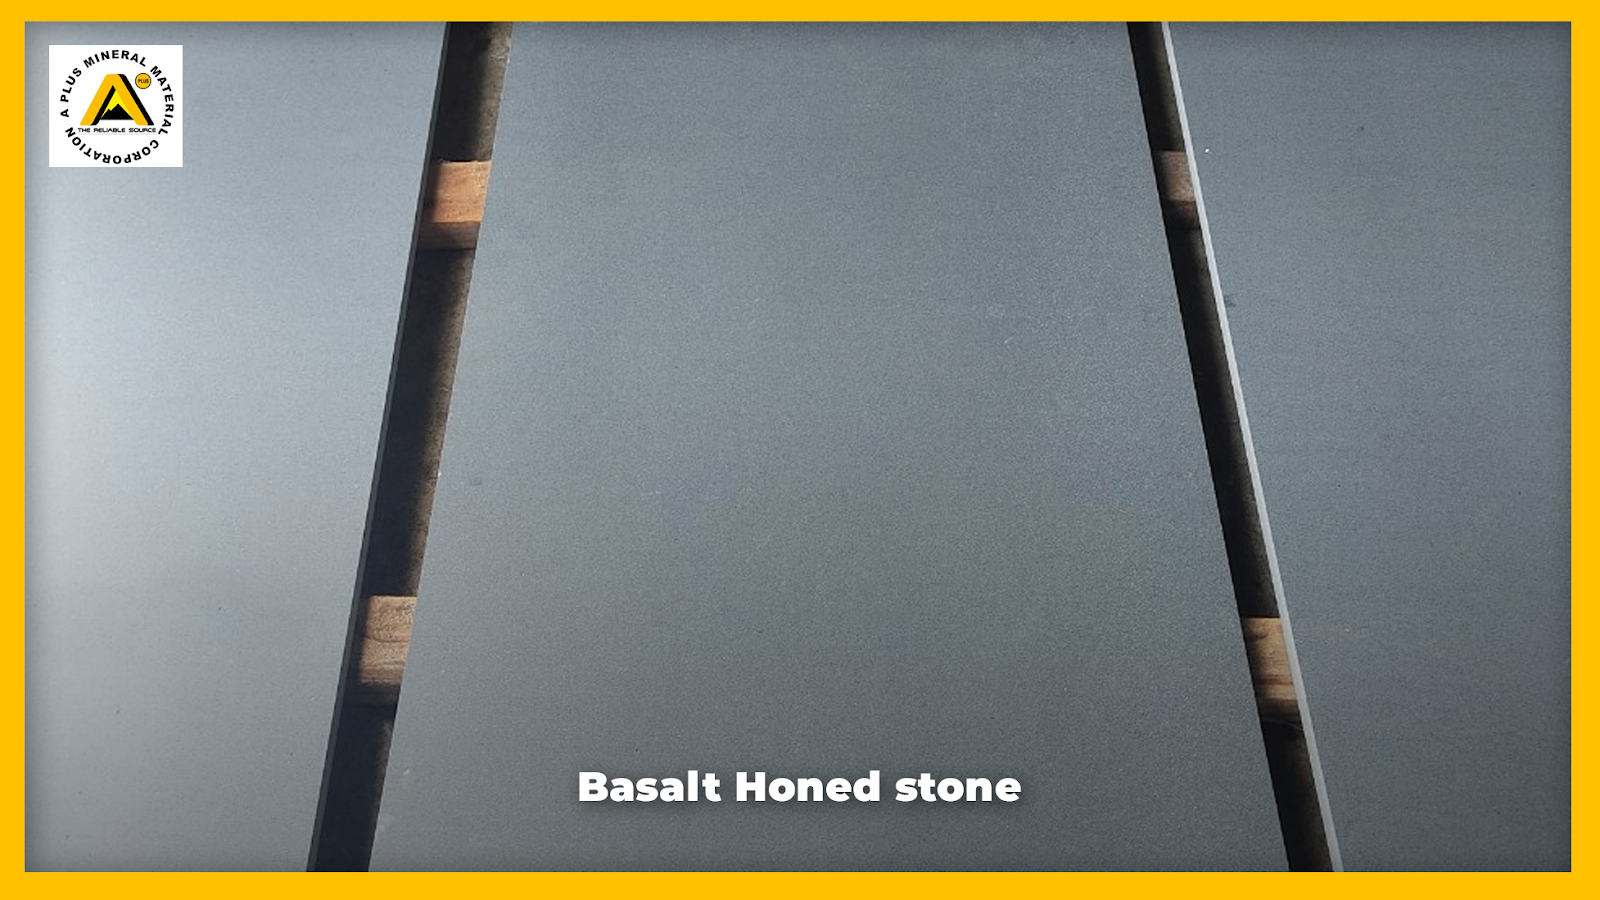 Basalt Honed stone